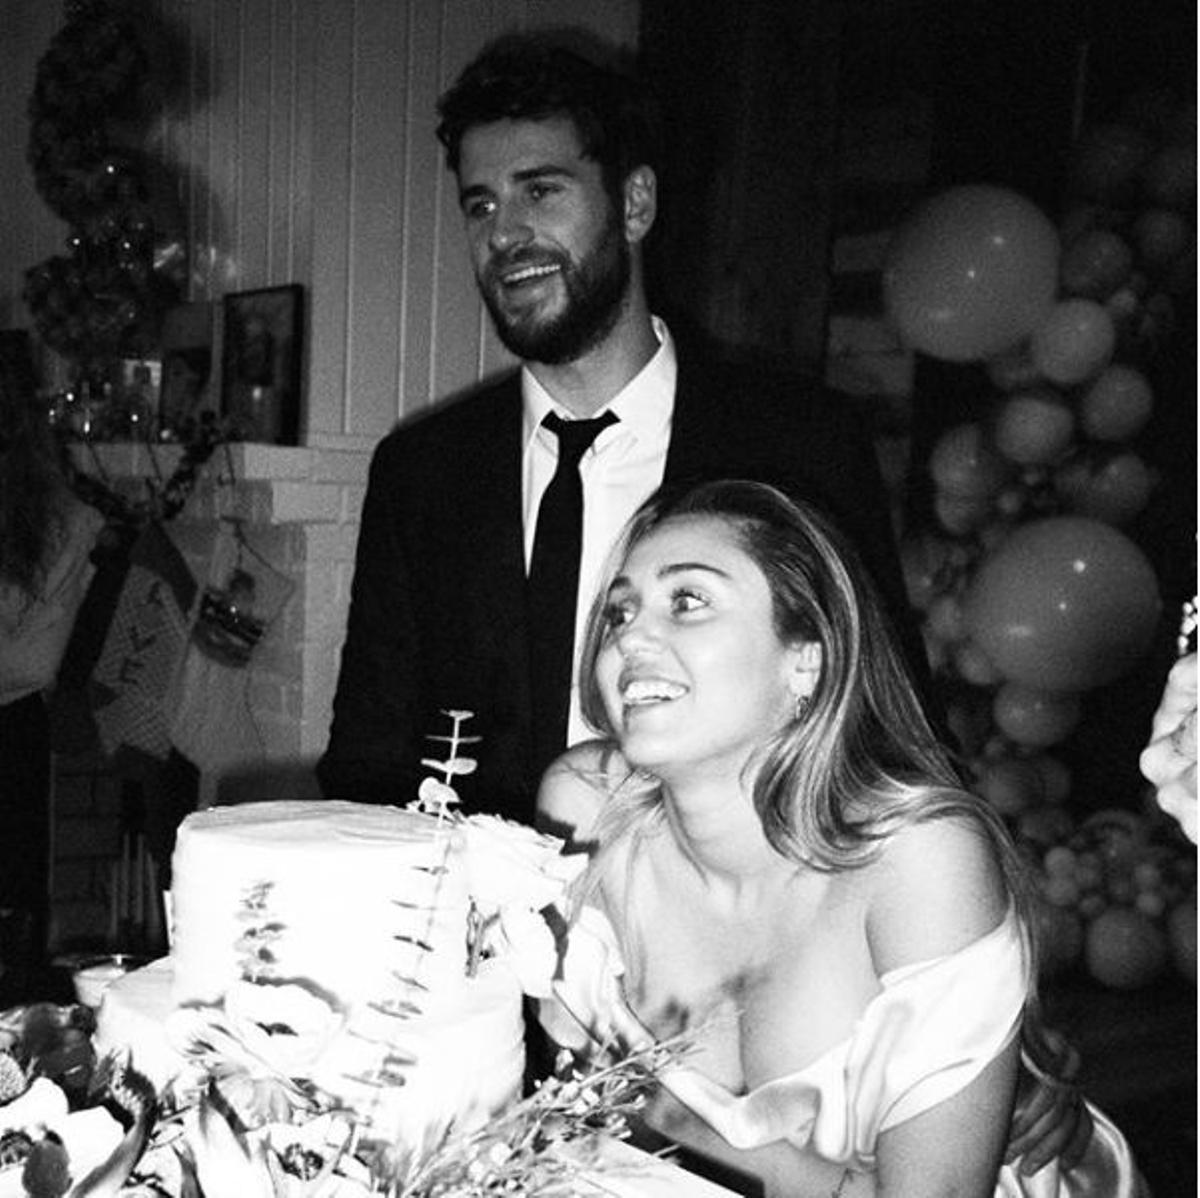 La tarta de boda, el escote de Miley Cyrus (y la sonrisa del novio)